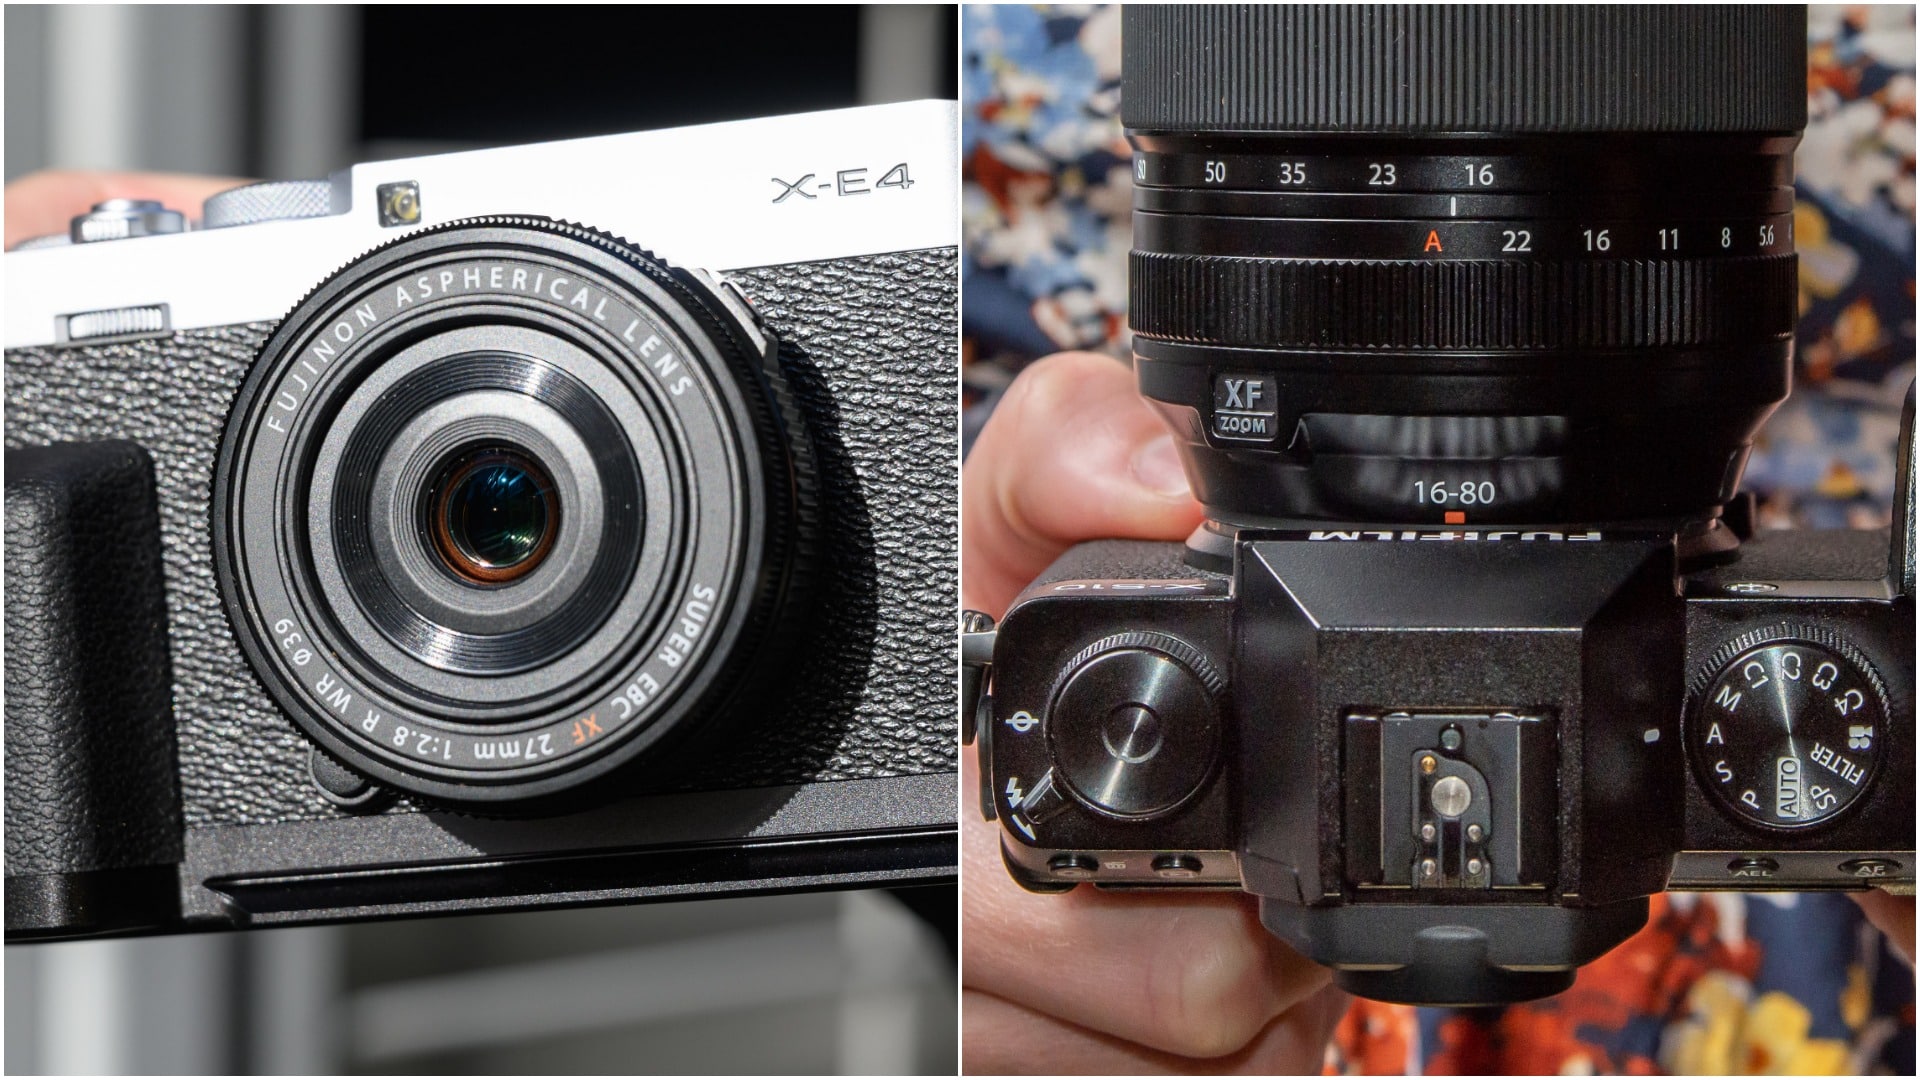 So sánh Fujifilm X-E4 và Fujifilm X-S10: Lựa chọn nào là phù hợp với bạn?